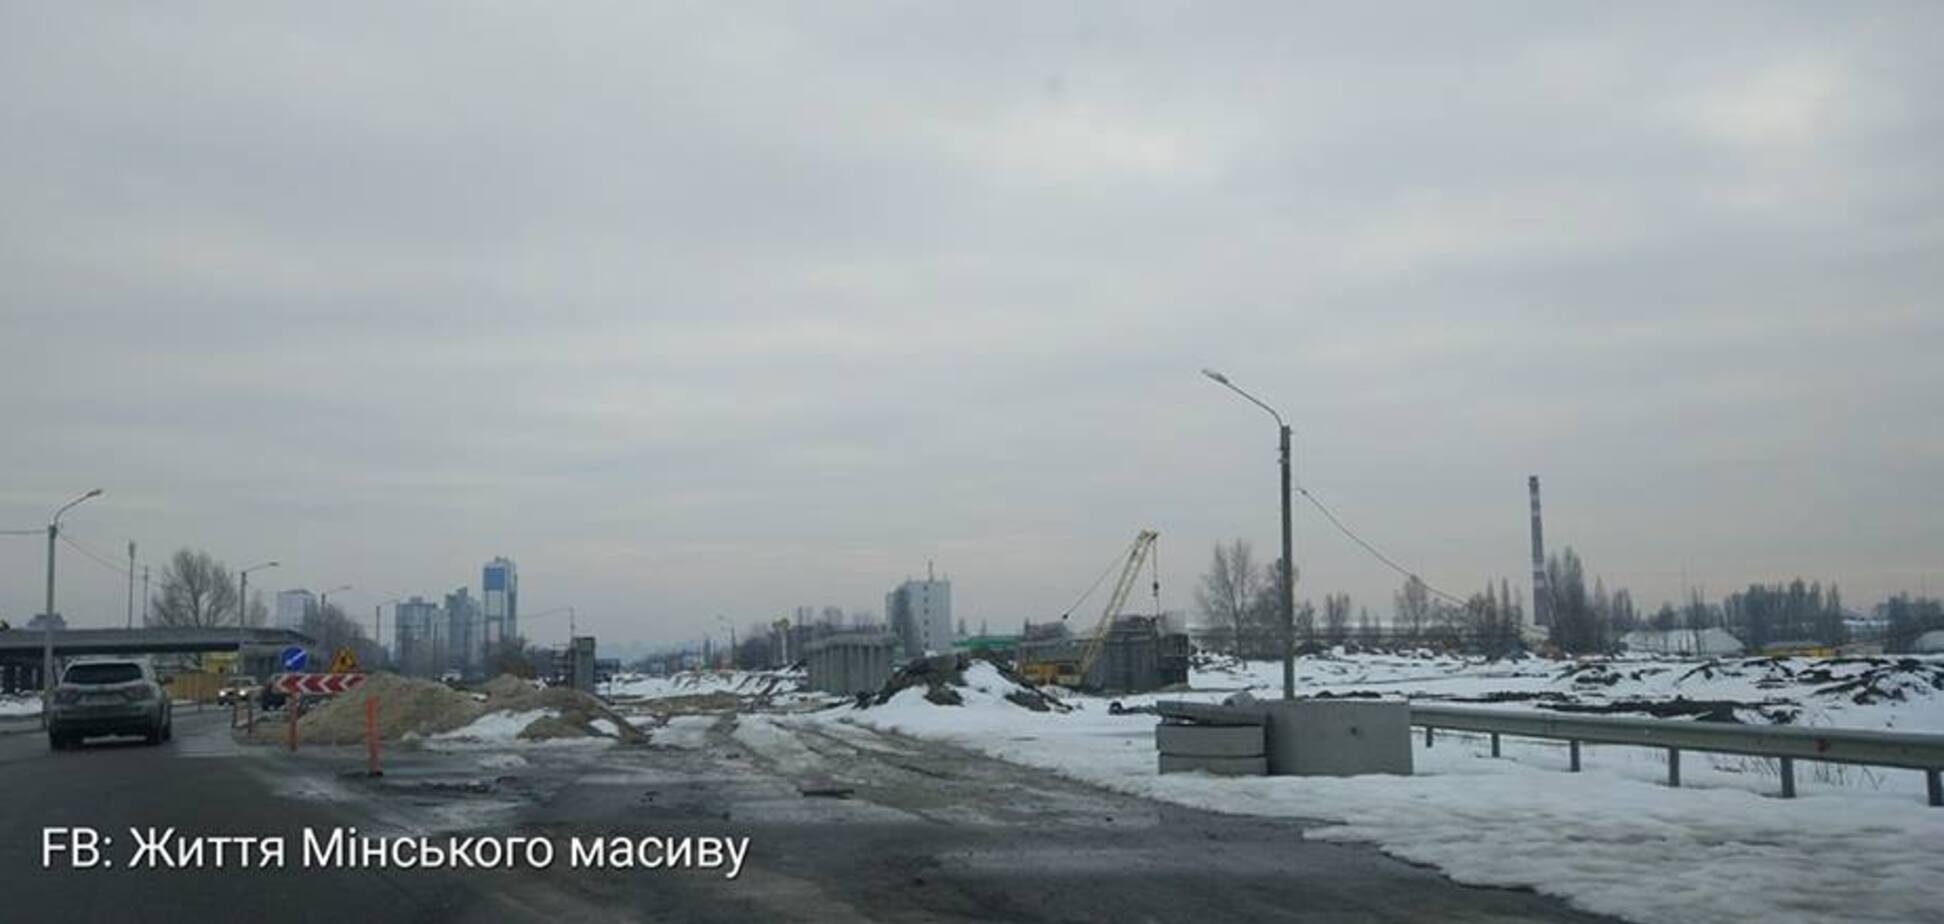 Как строят Большую кольцевую дорогу в Киеве: появились свежие фото